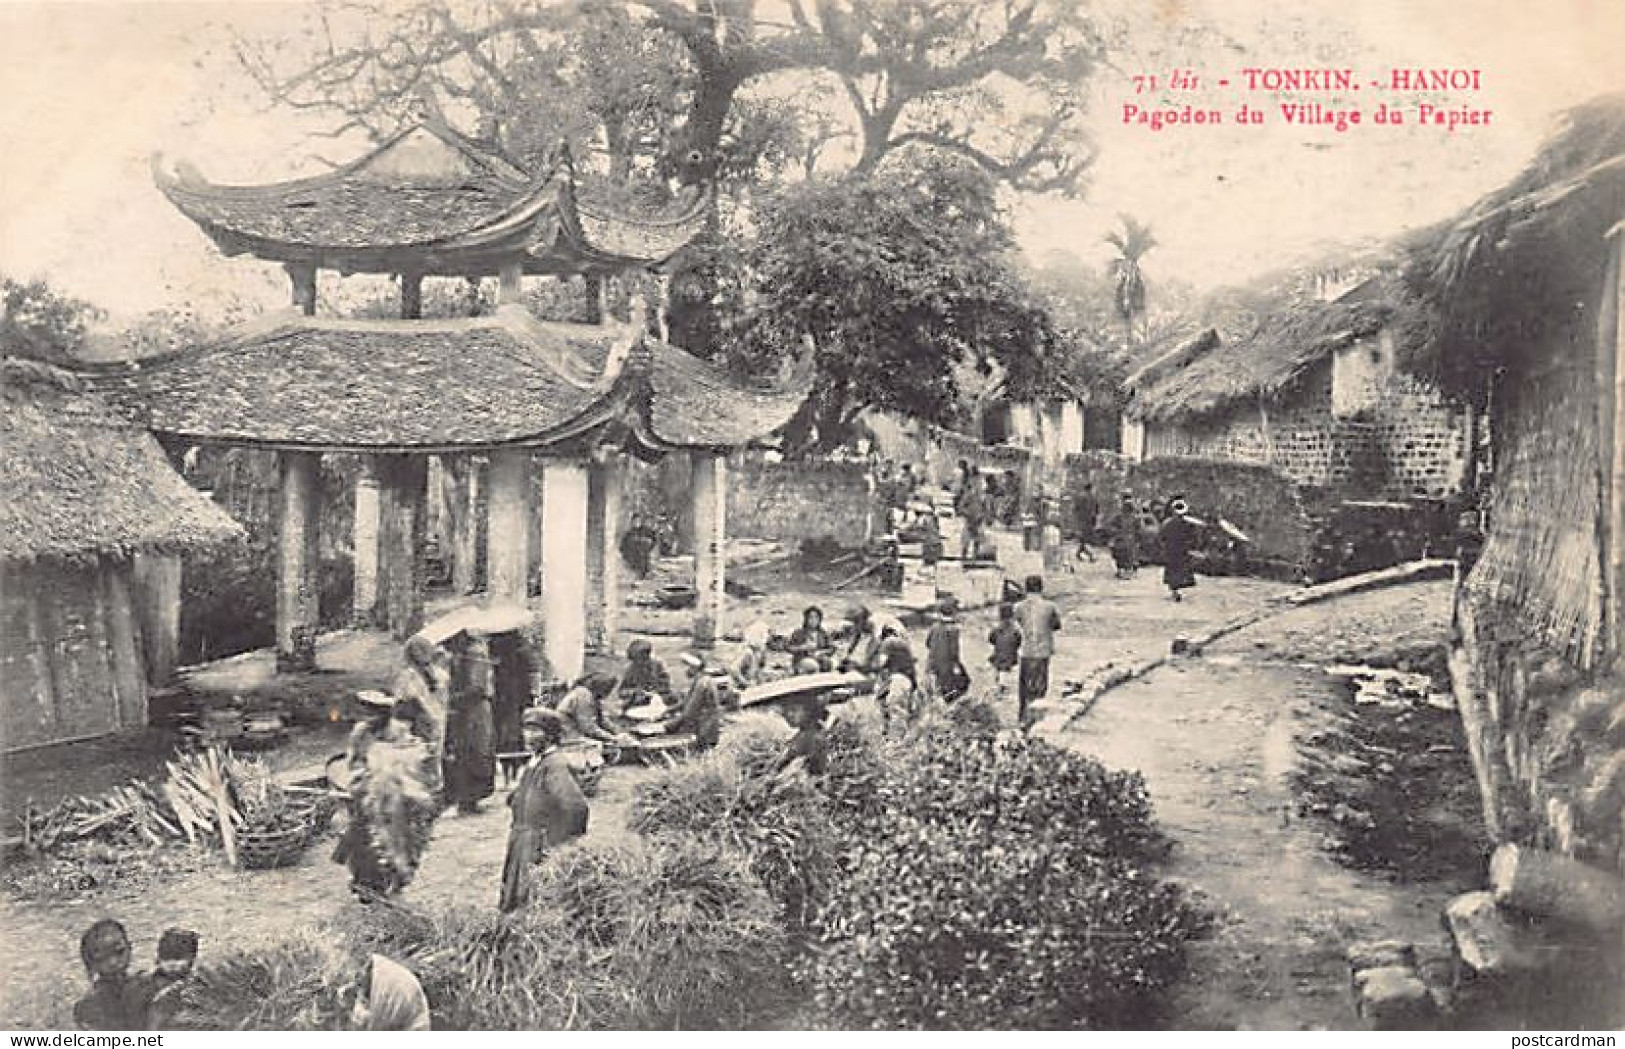 Viet-Nam - HANOÏ - Pagodon Du Village Du Papier - Ed. Imprimeries Réunies De Nan - Vietnam